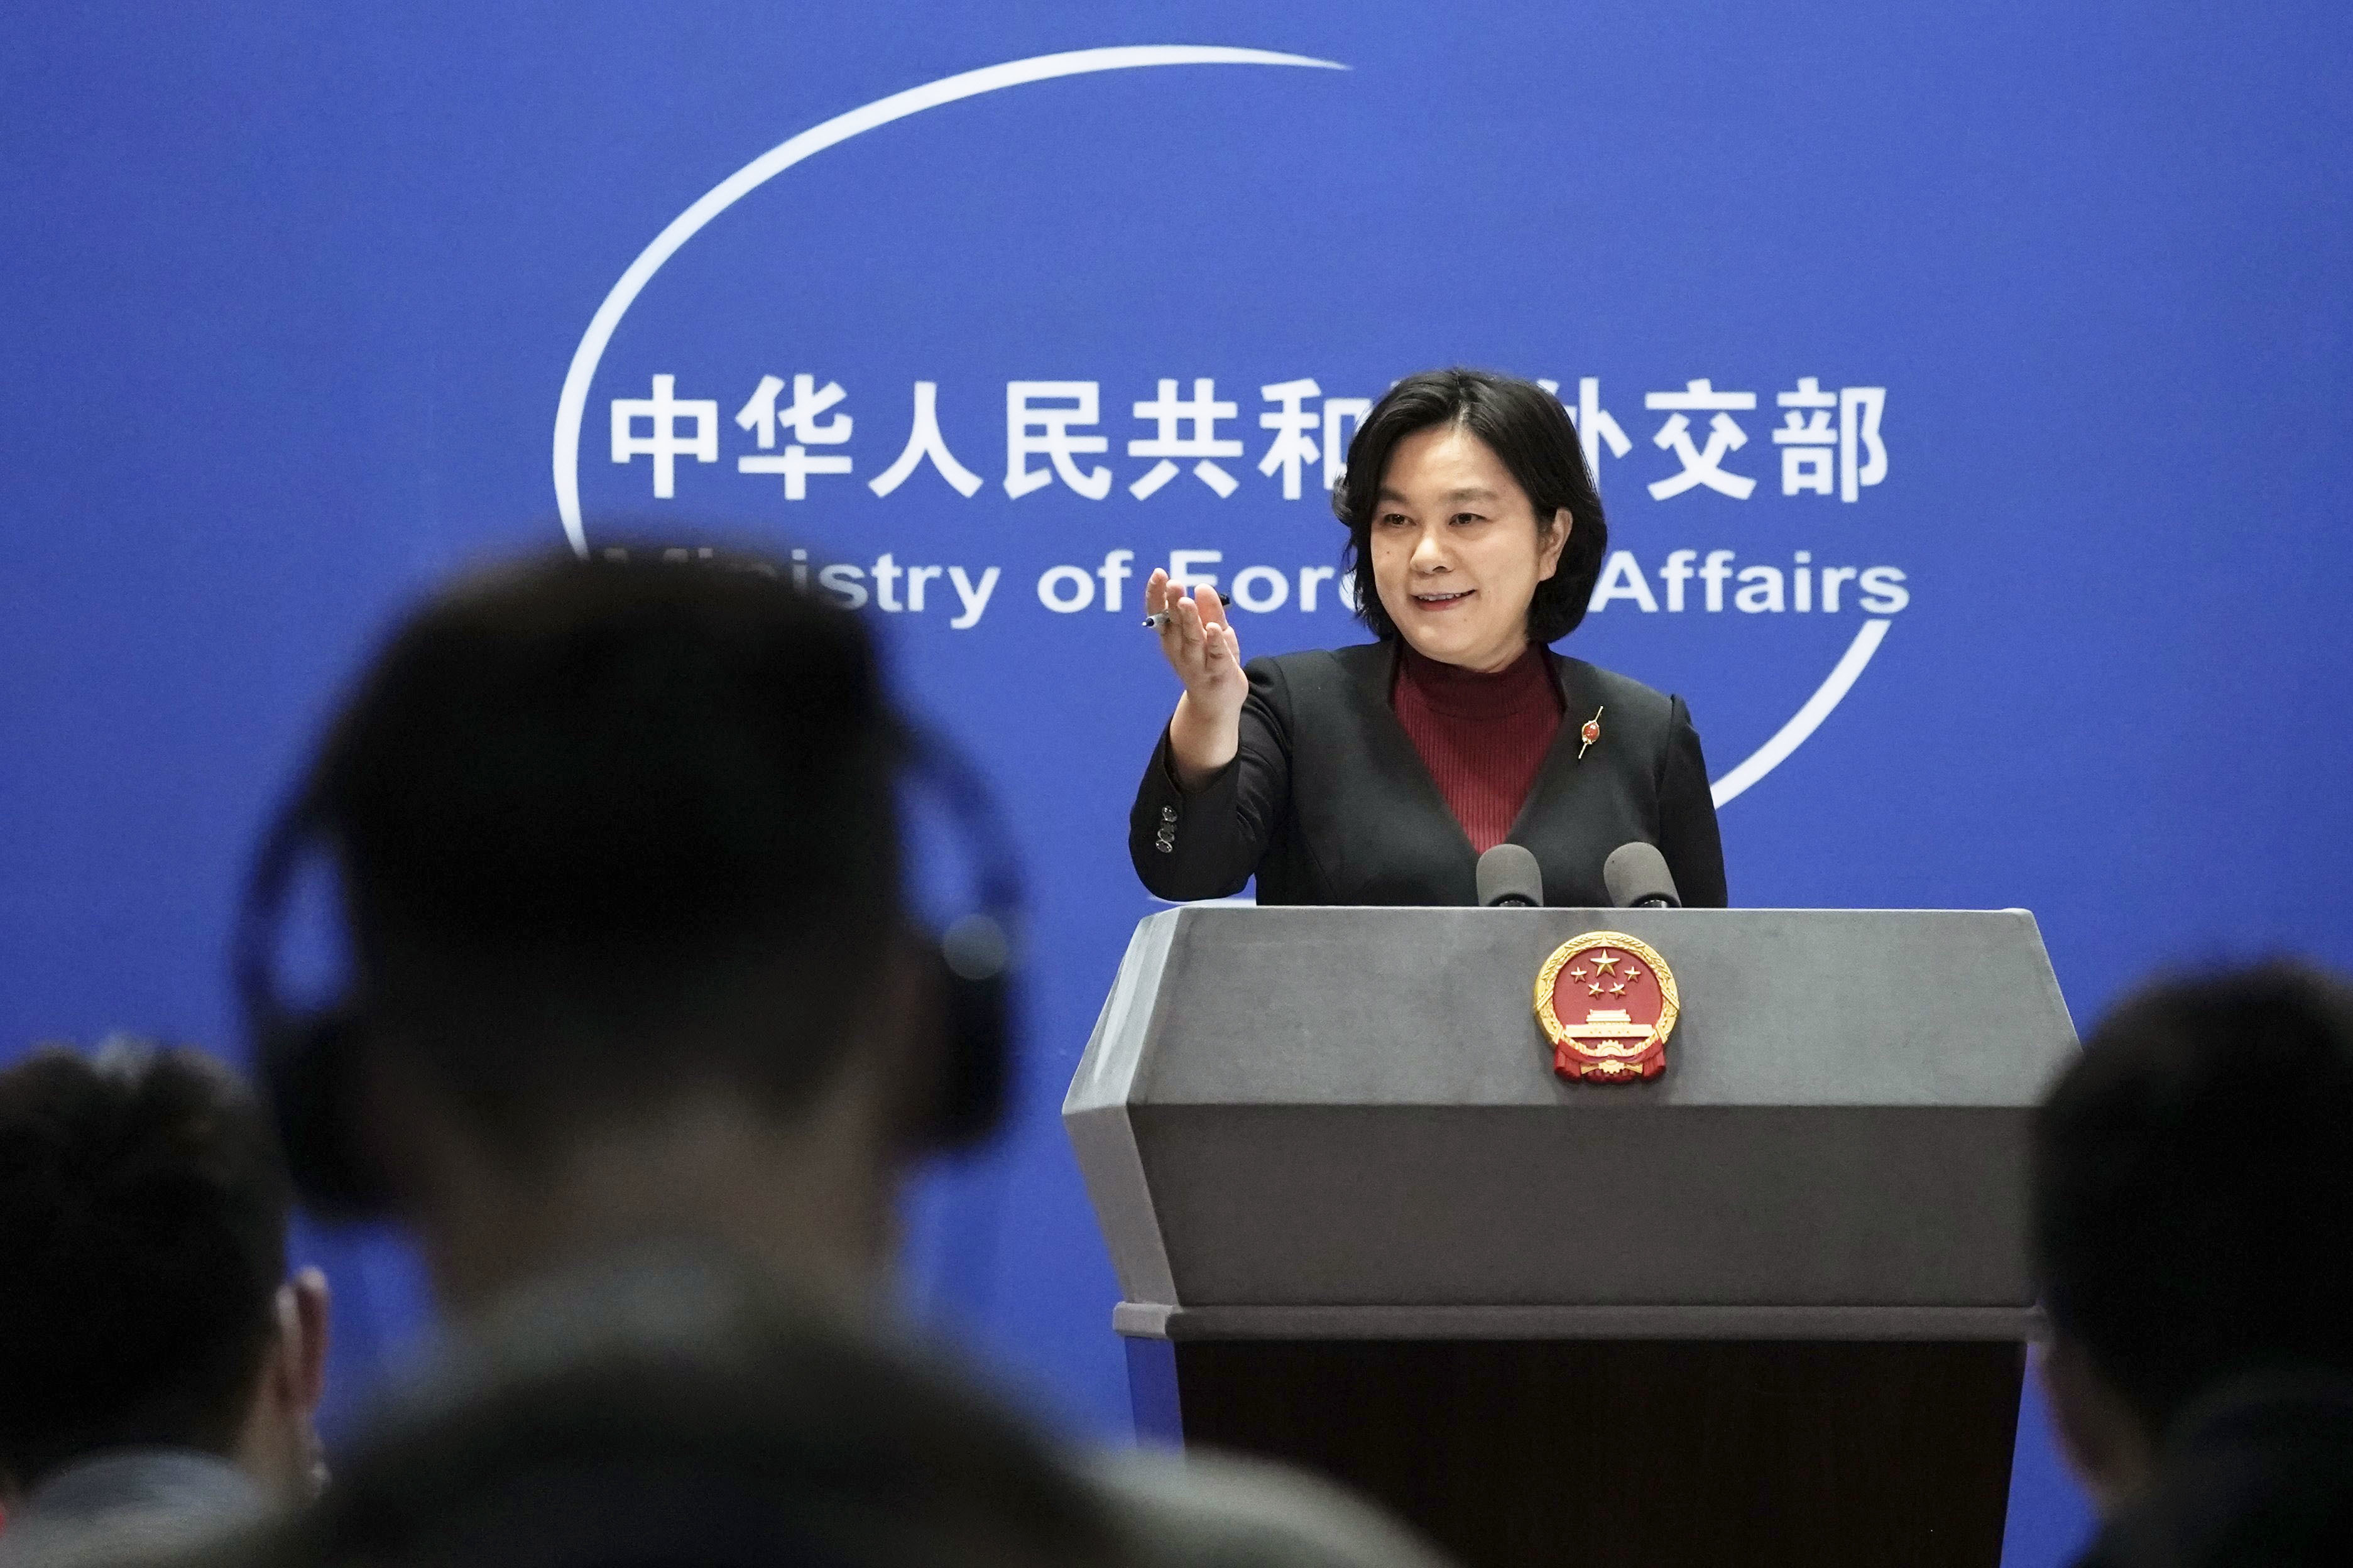 Die Sprecherin des chinesischen Außenministeriums, Hua Chunying, nimmt am 23. Februar an einer Pressekonferenz in Peking teil.